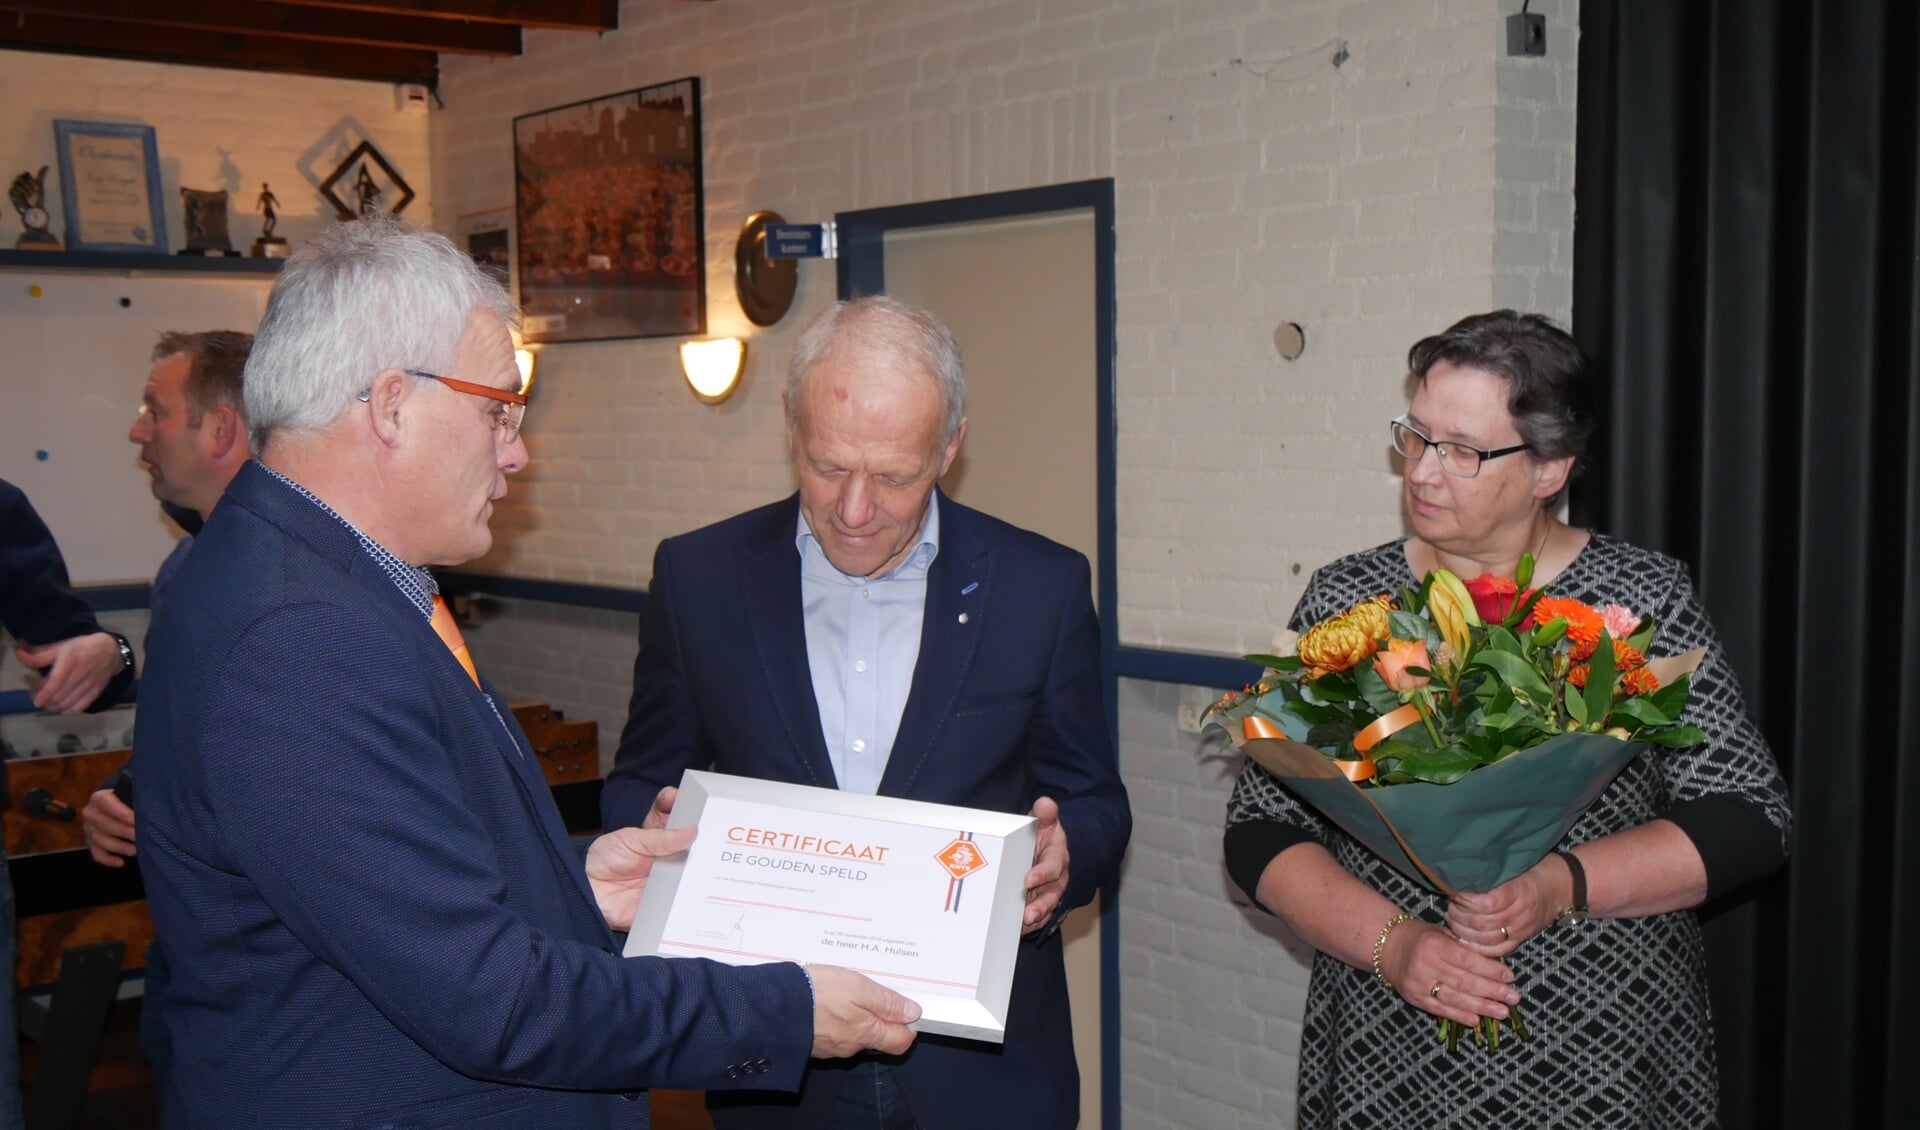 Henk ontvangt het certificaat behorende bij de gouden speld uit handen van Toon Kerkhof, met naast hem zijn vrouw Marieke